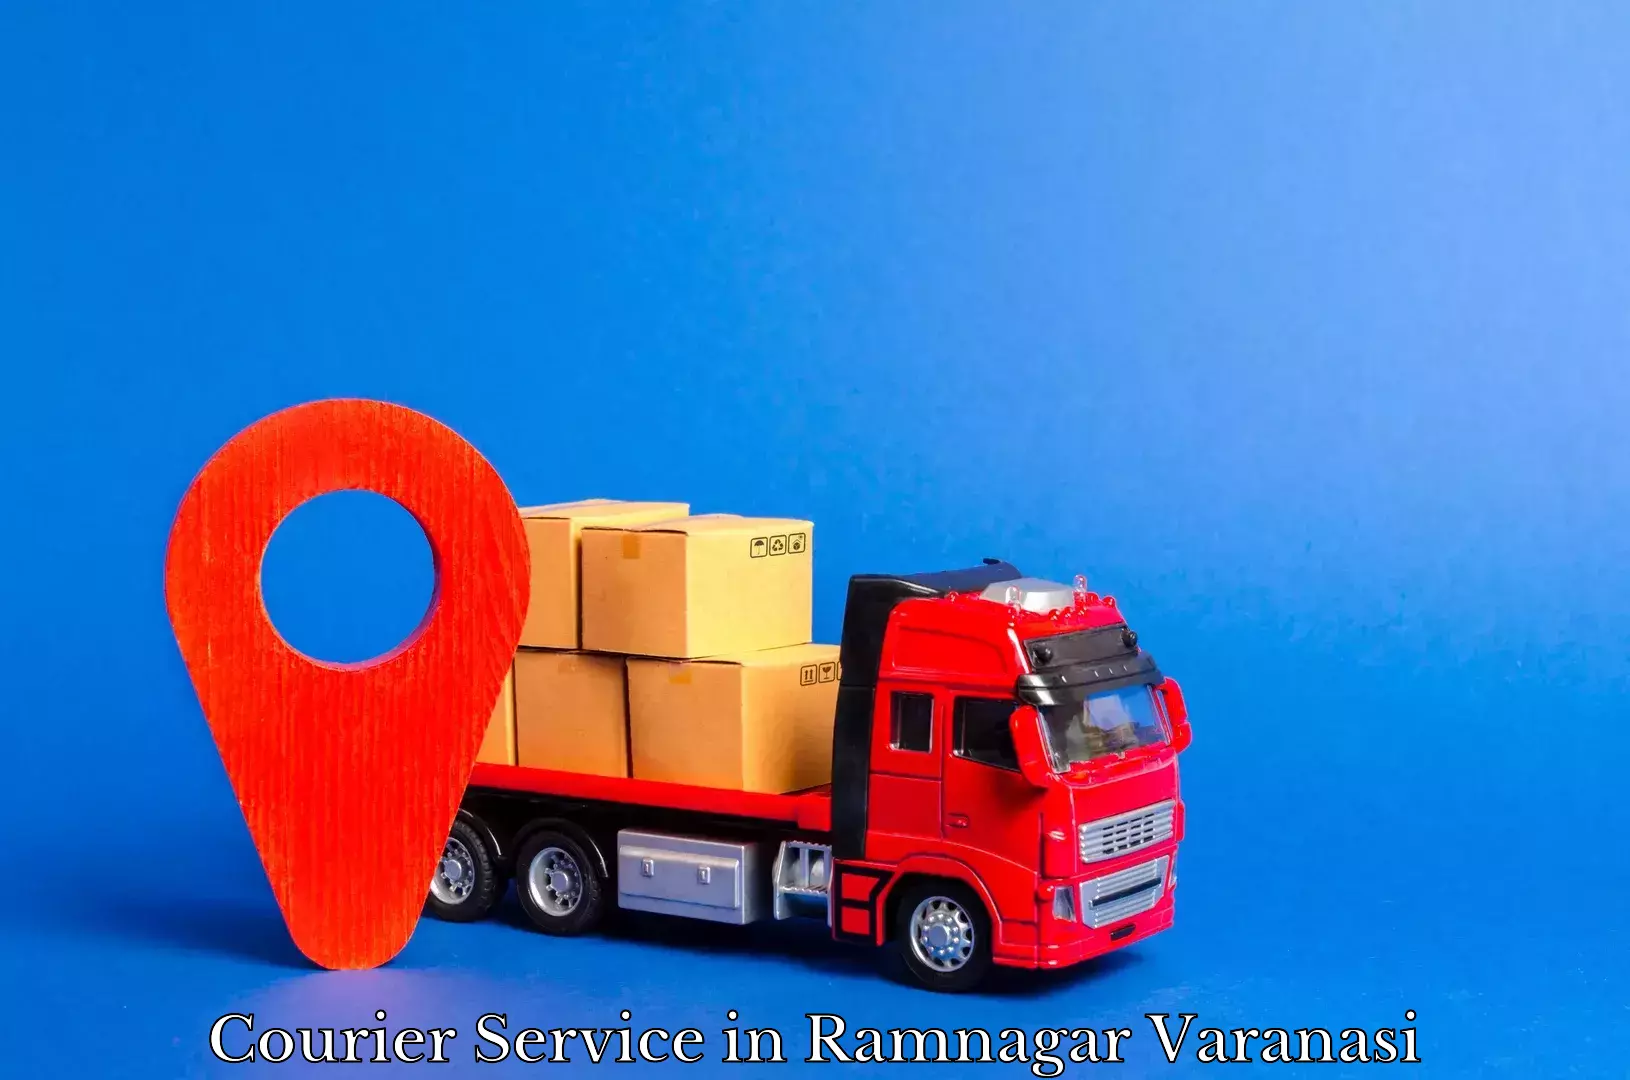 High value parcel delivery in Ramnagar Varanasi